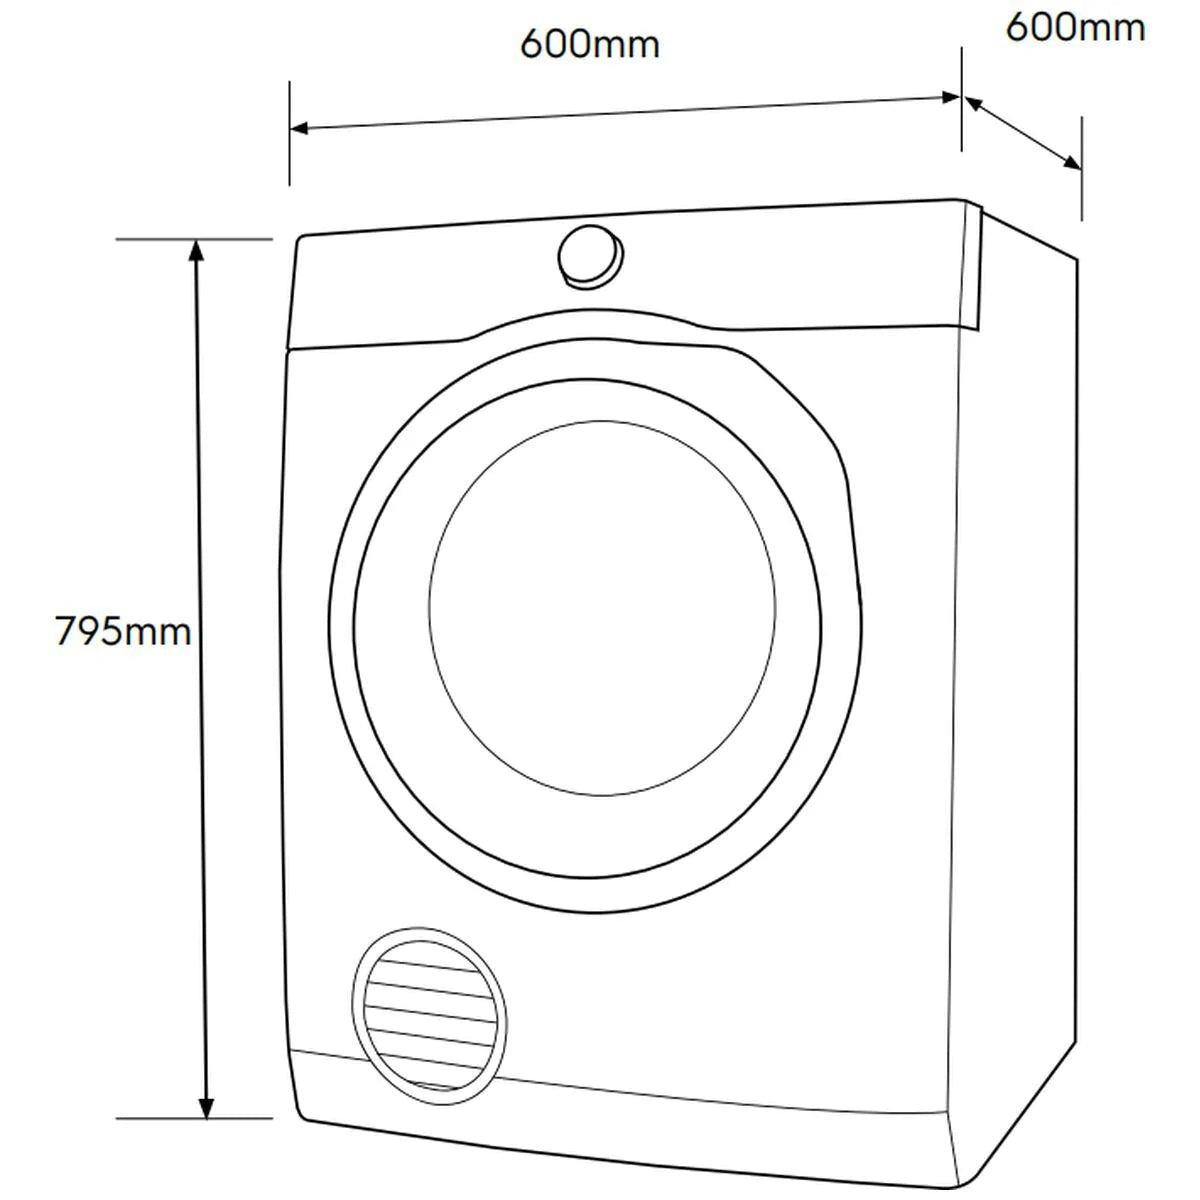 Electrolux Auto Vented Dryer 7kg - Brisbane Home Appliances